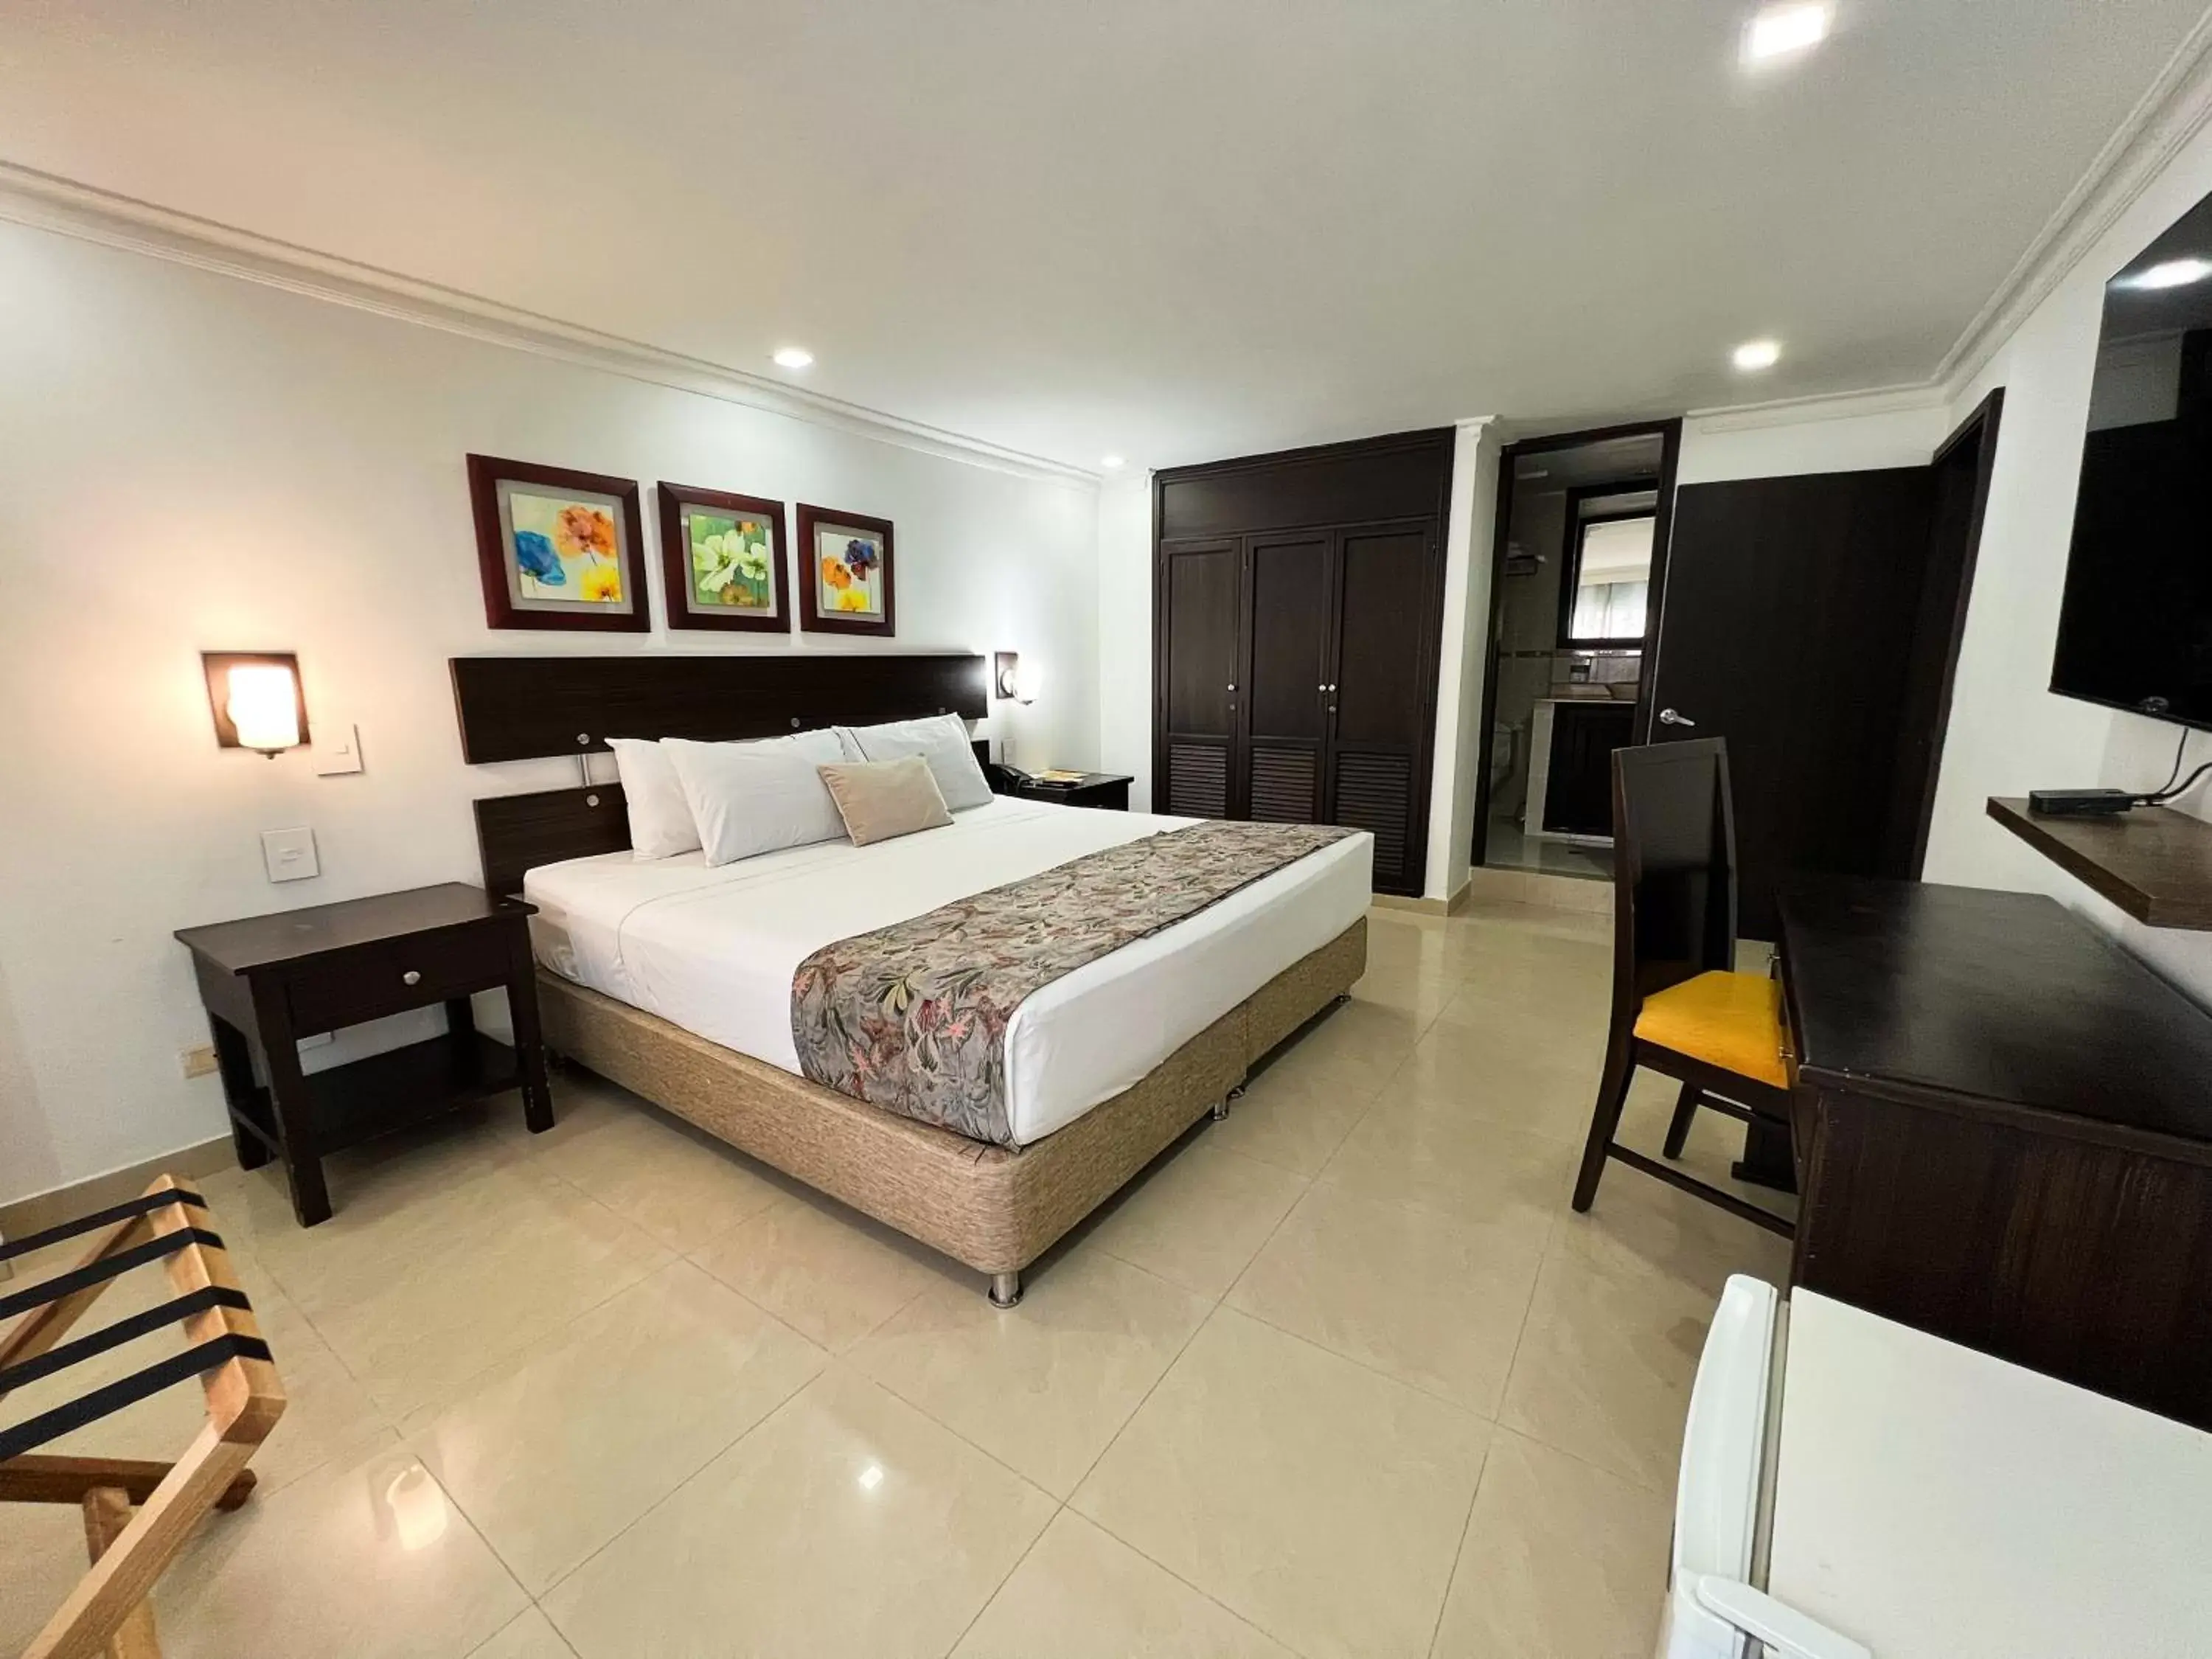 Bedroom in Hotel Arhuaco